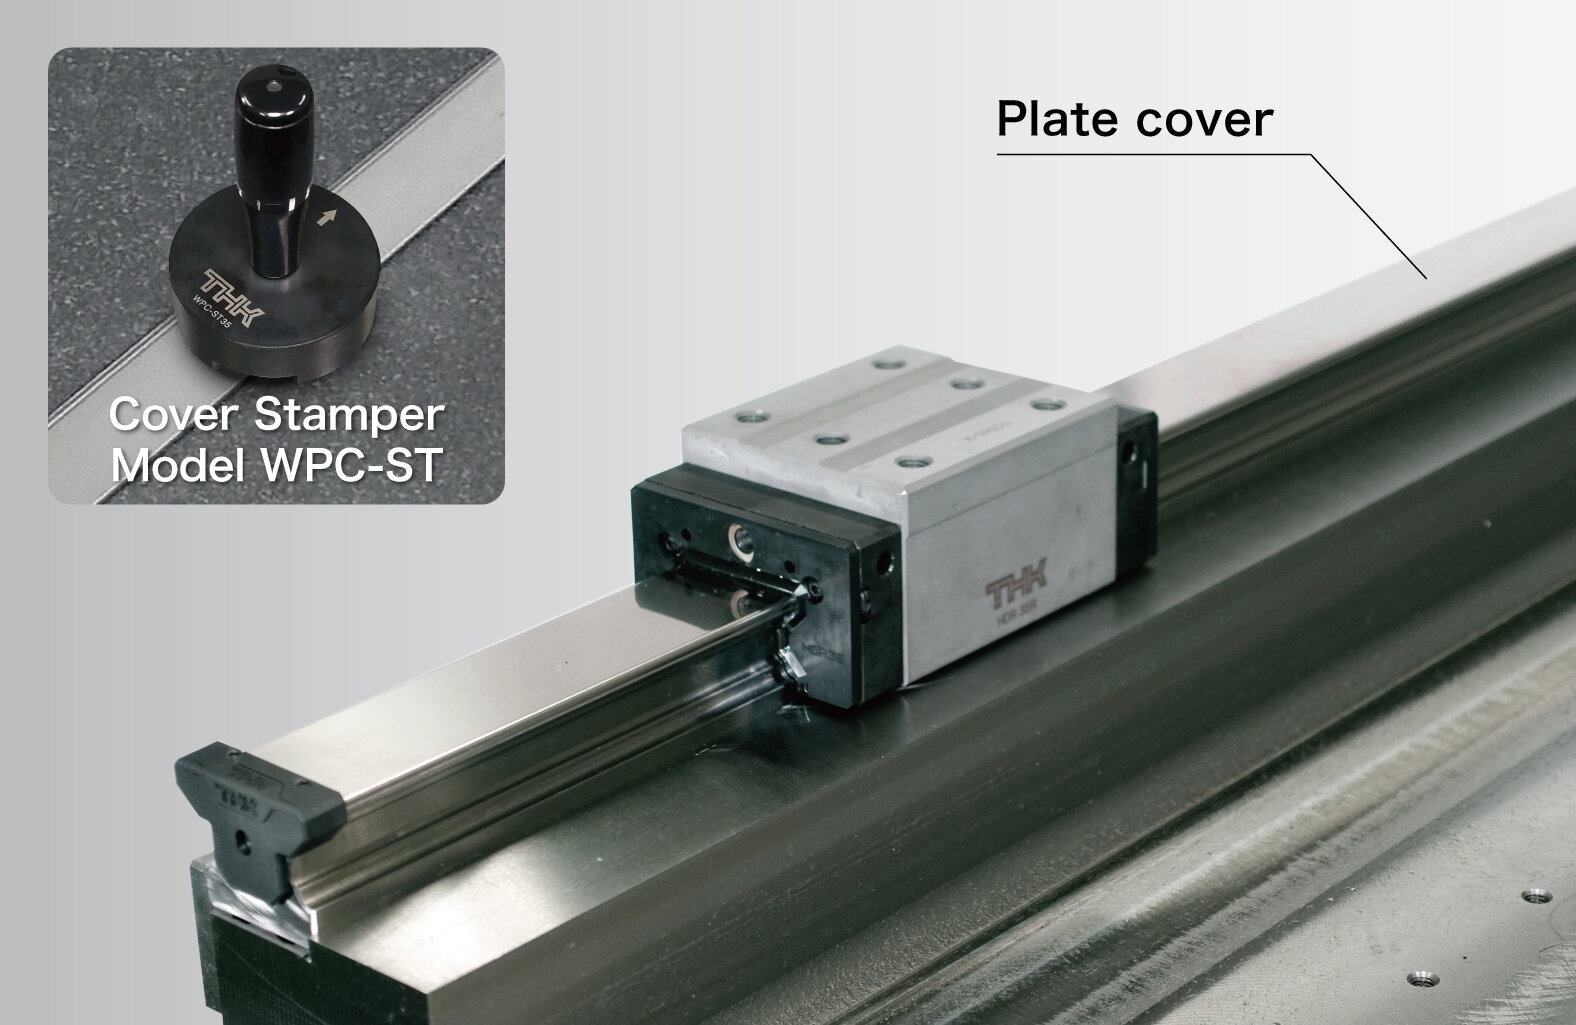 Cover Stamper Model WPC-ST